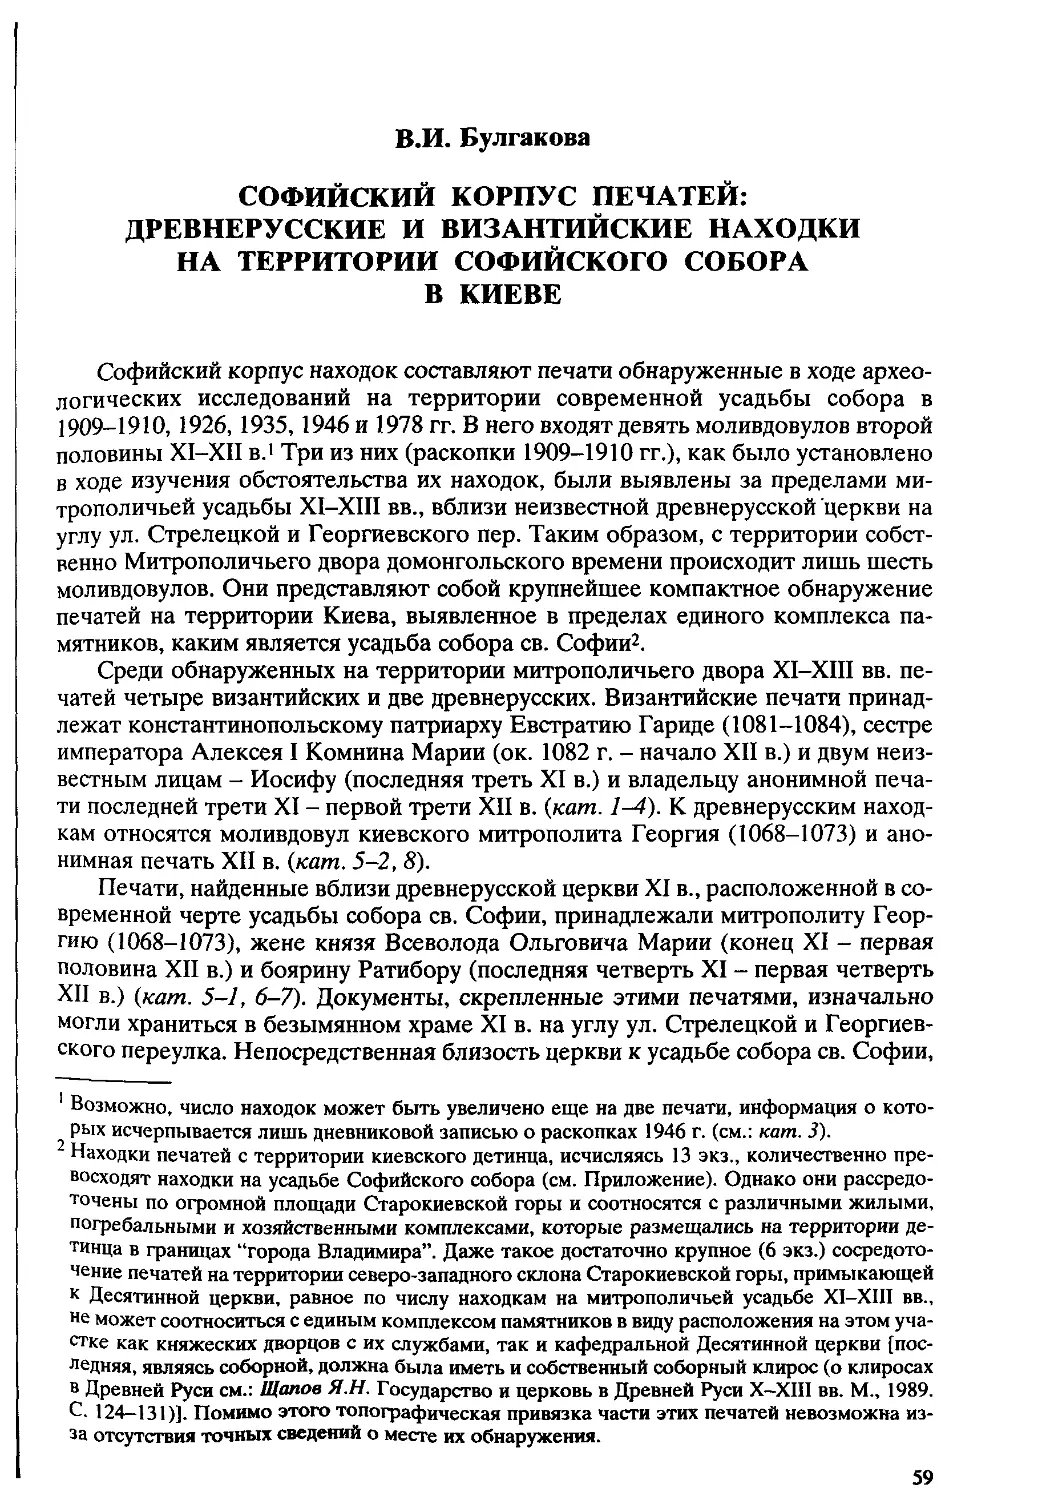 ﻿Булгакова В. И. Софийский корпус печатей: древнерусские и византийские находки на территории Софийского собора в Киев